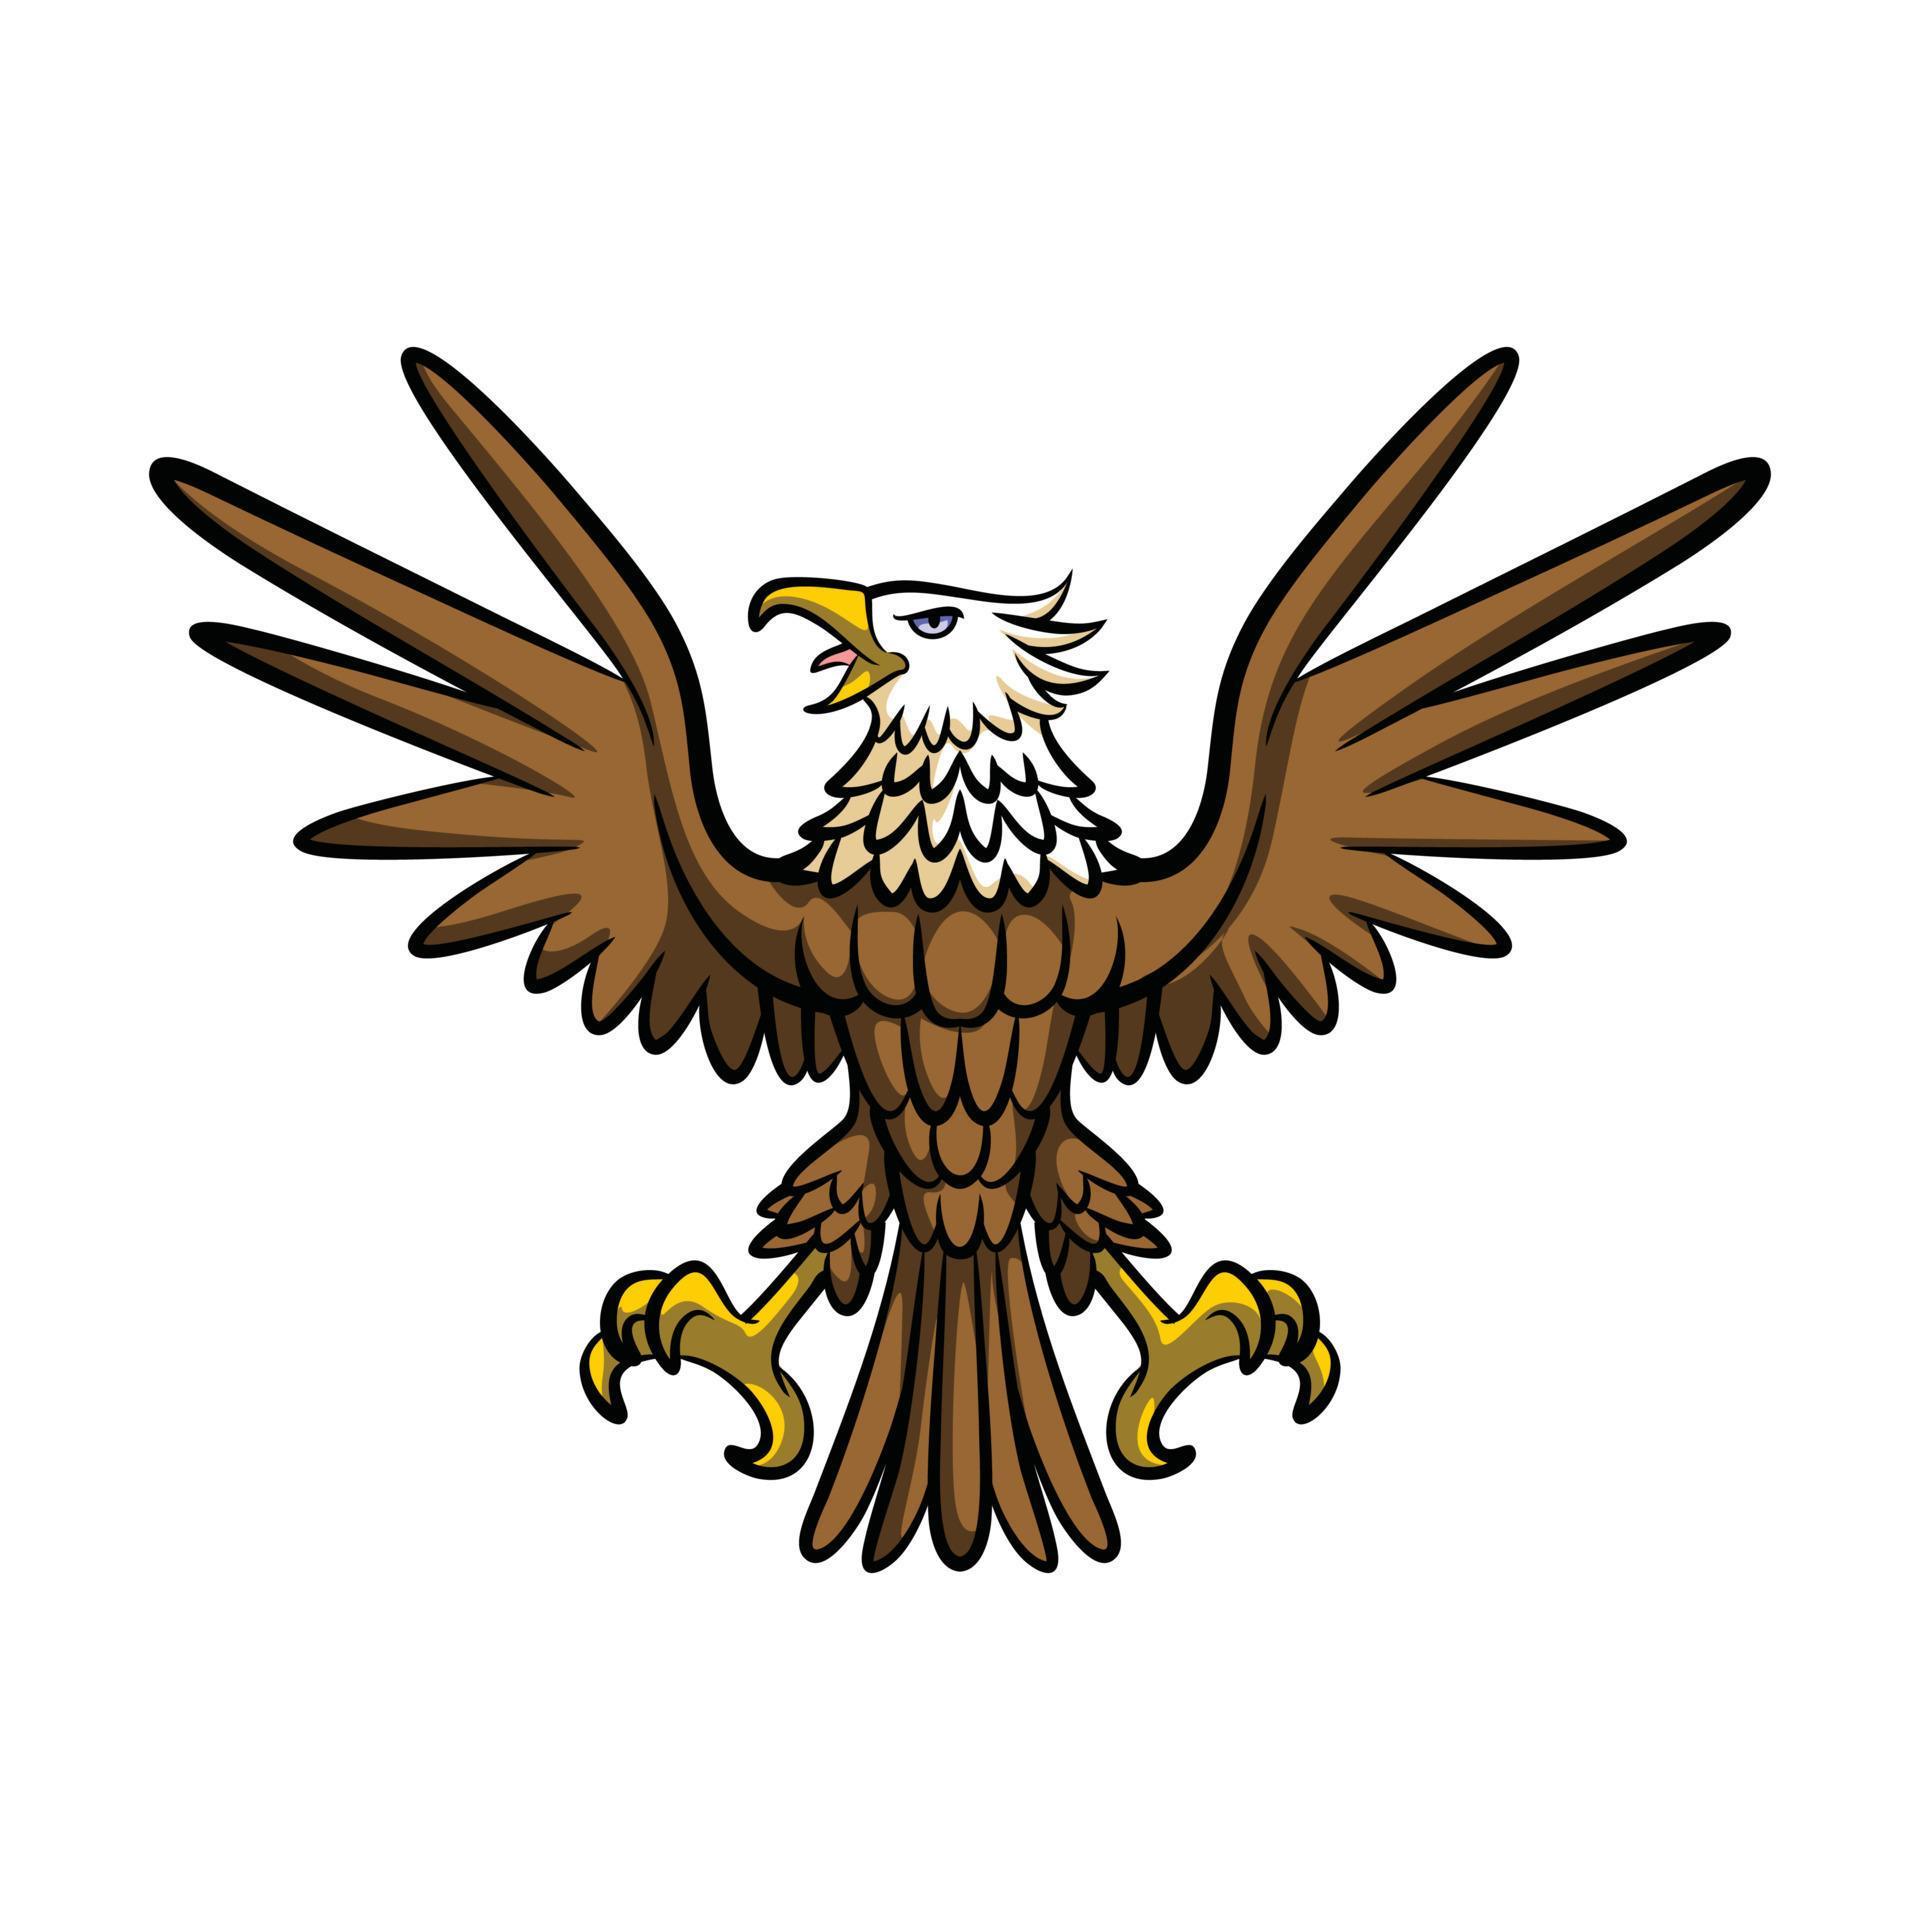 Eagle Symbol Mascot Illustration 17736807 Vector Art at Vecteezy